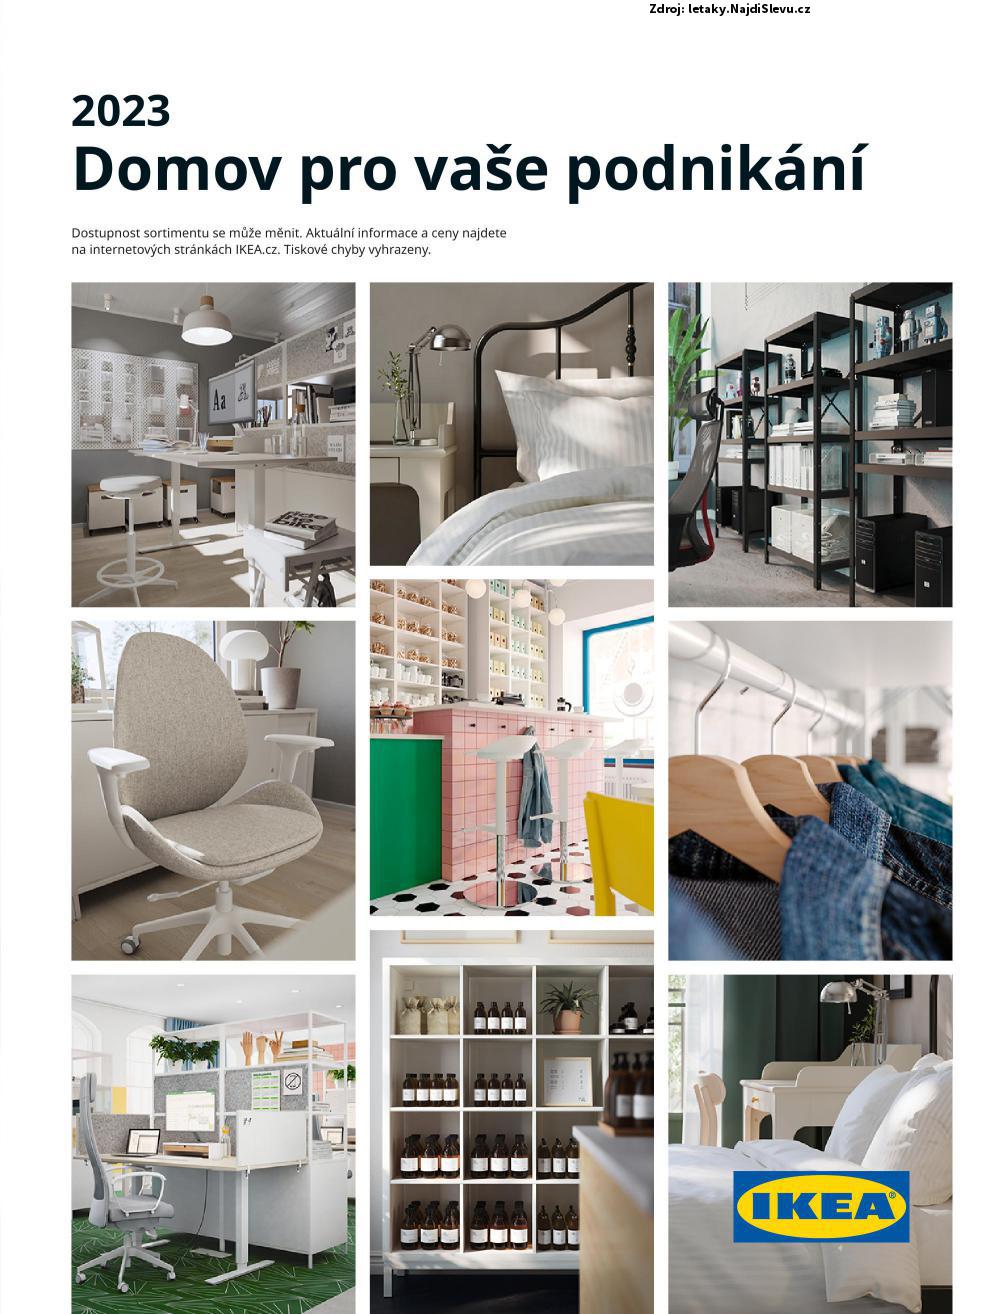 Strana 1 - letk IKEA (2023)